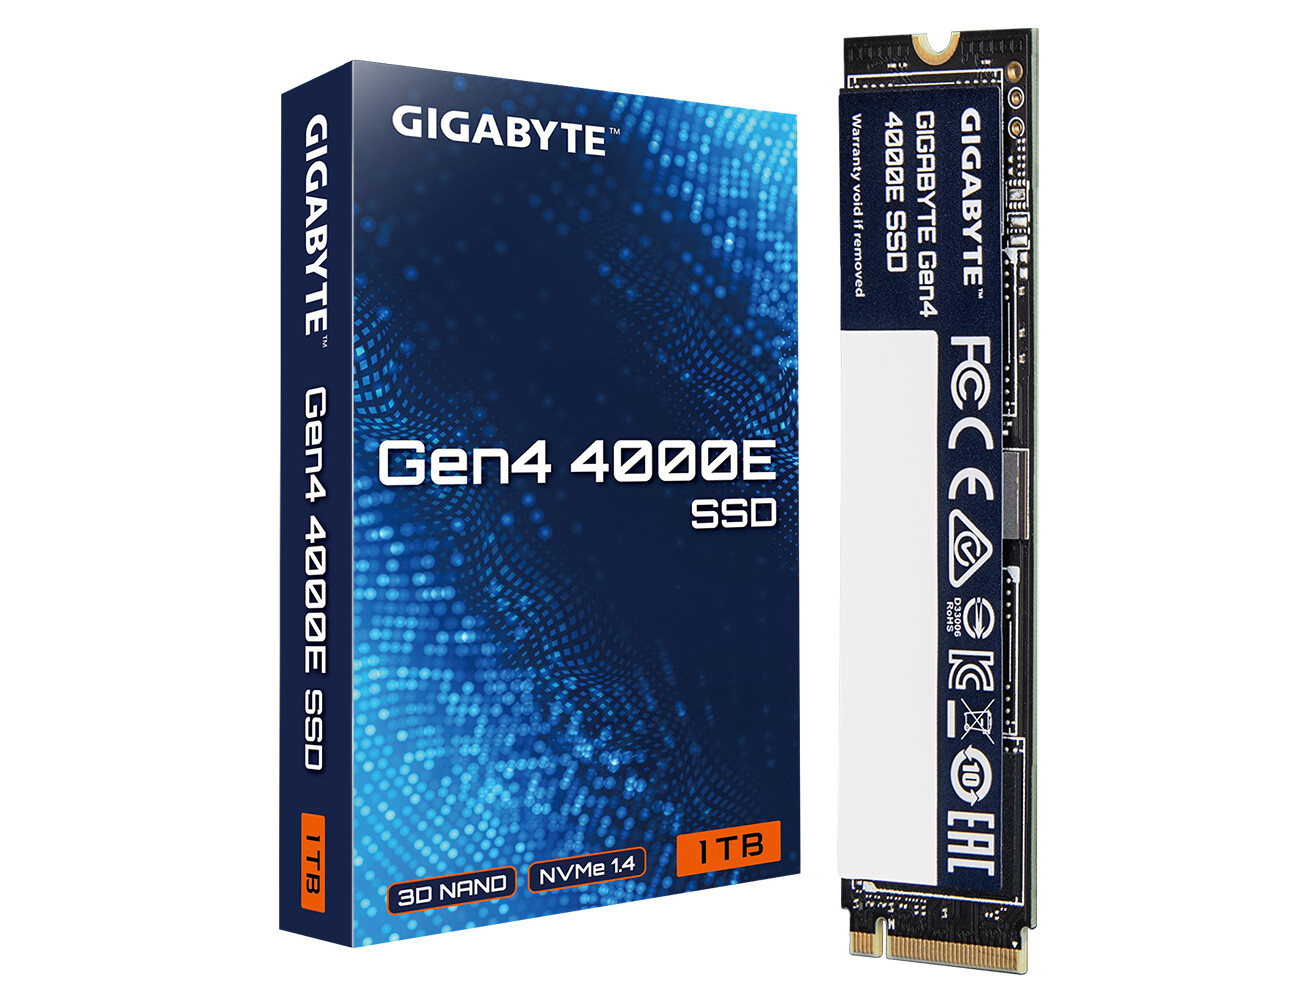 GIGABYTE 推出 Gen4 4000E SSD